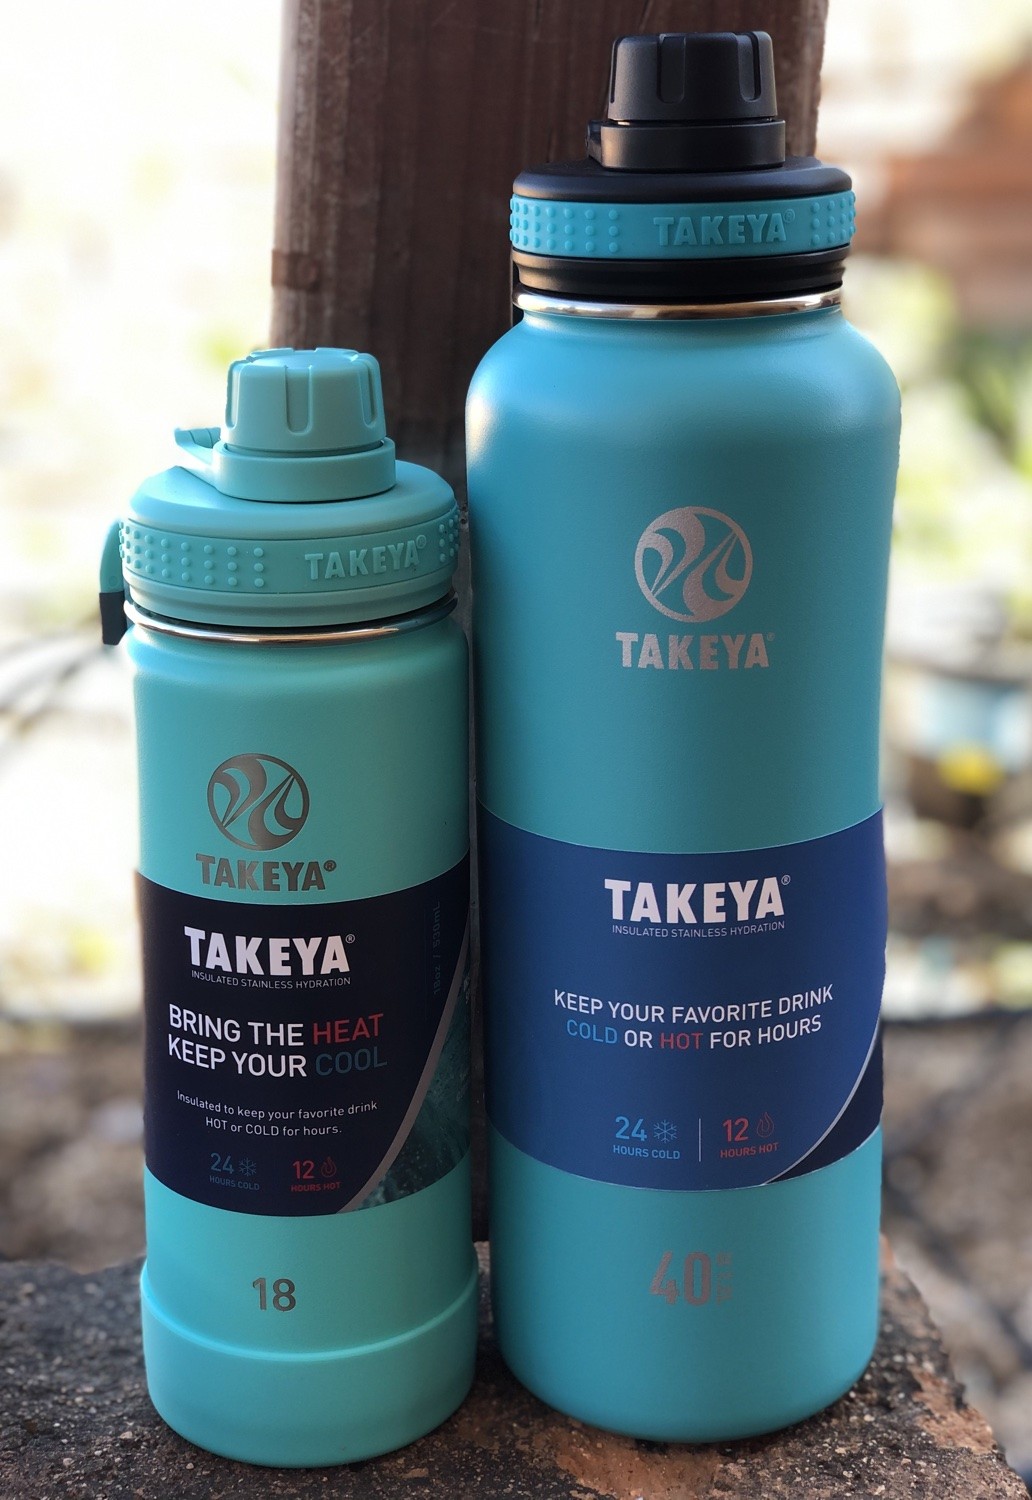 Takeya water bottles 40 oz versus 18 oz